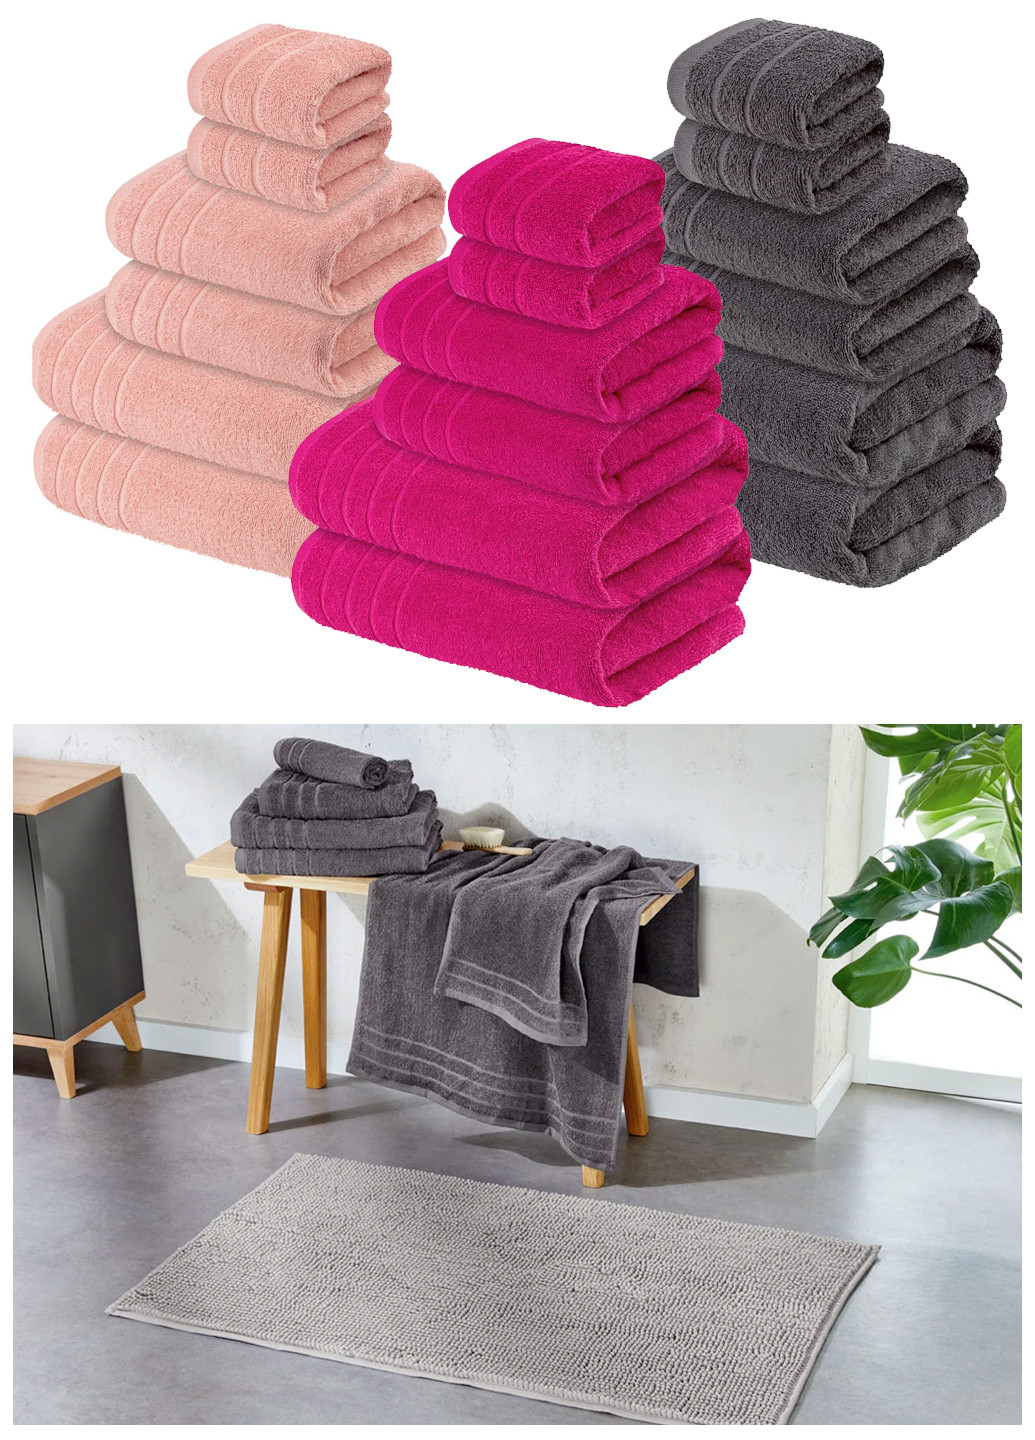 Livarno home набор полотенец (3 набора по 6 шт) комбинированный производство - Германия